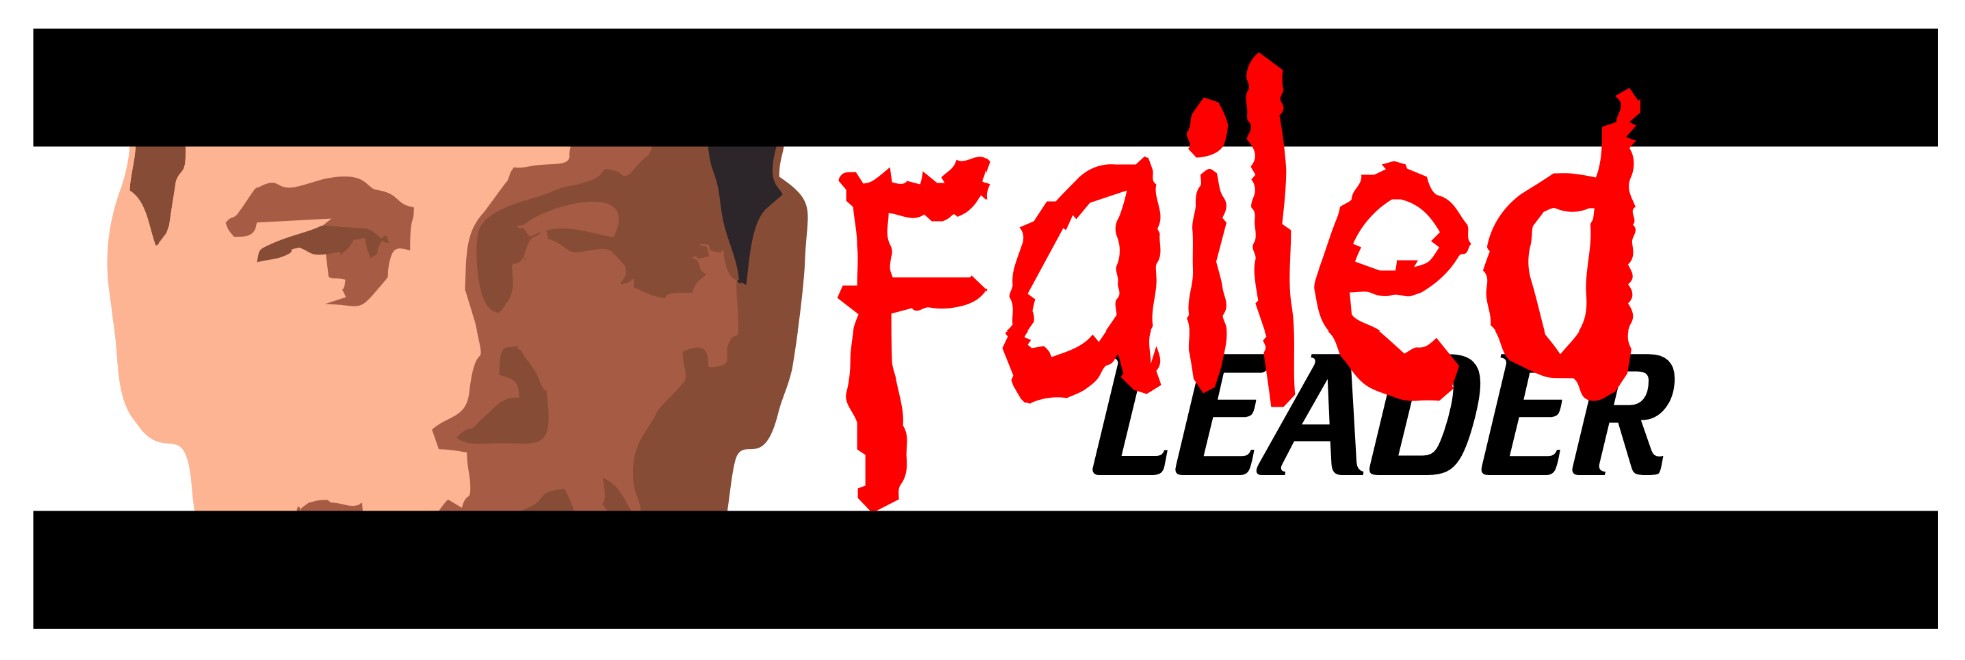 FAILED LEADER